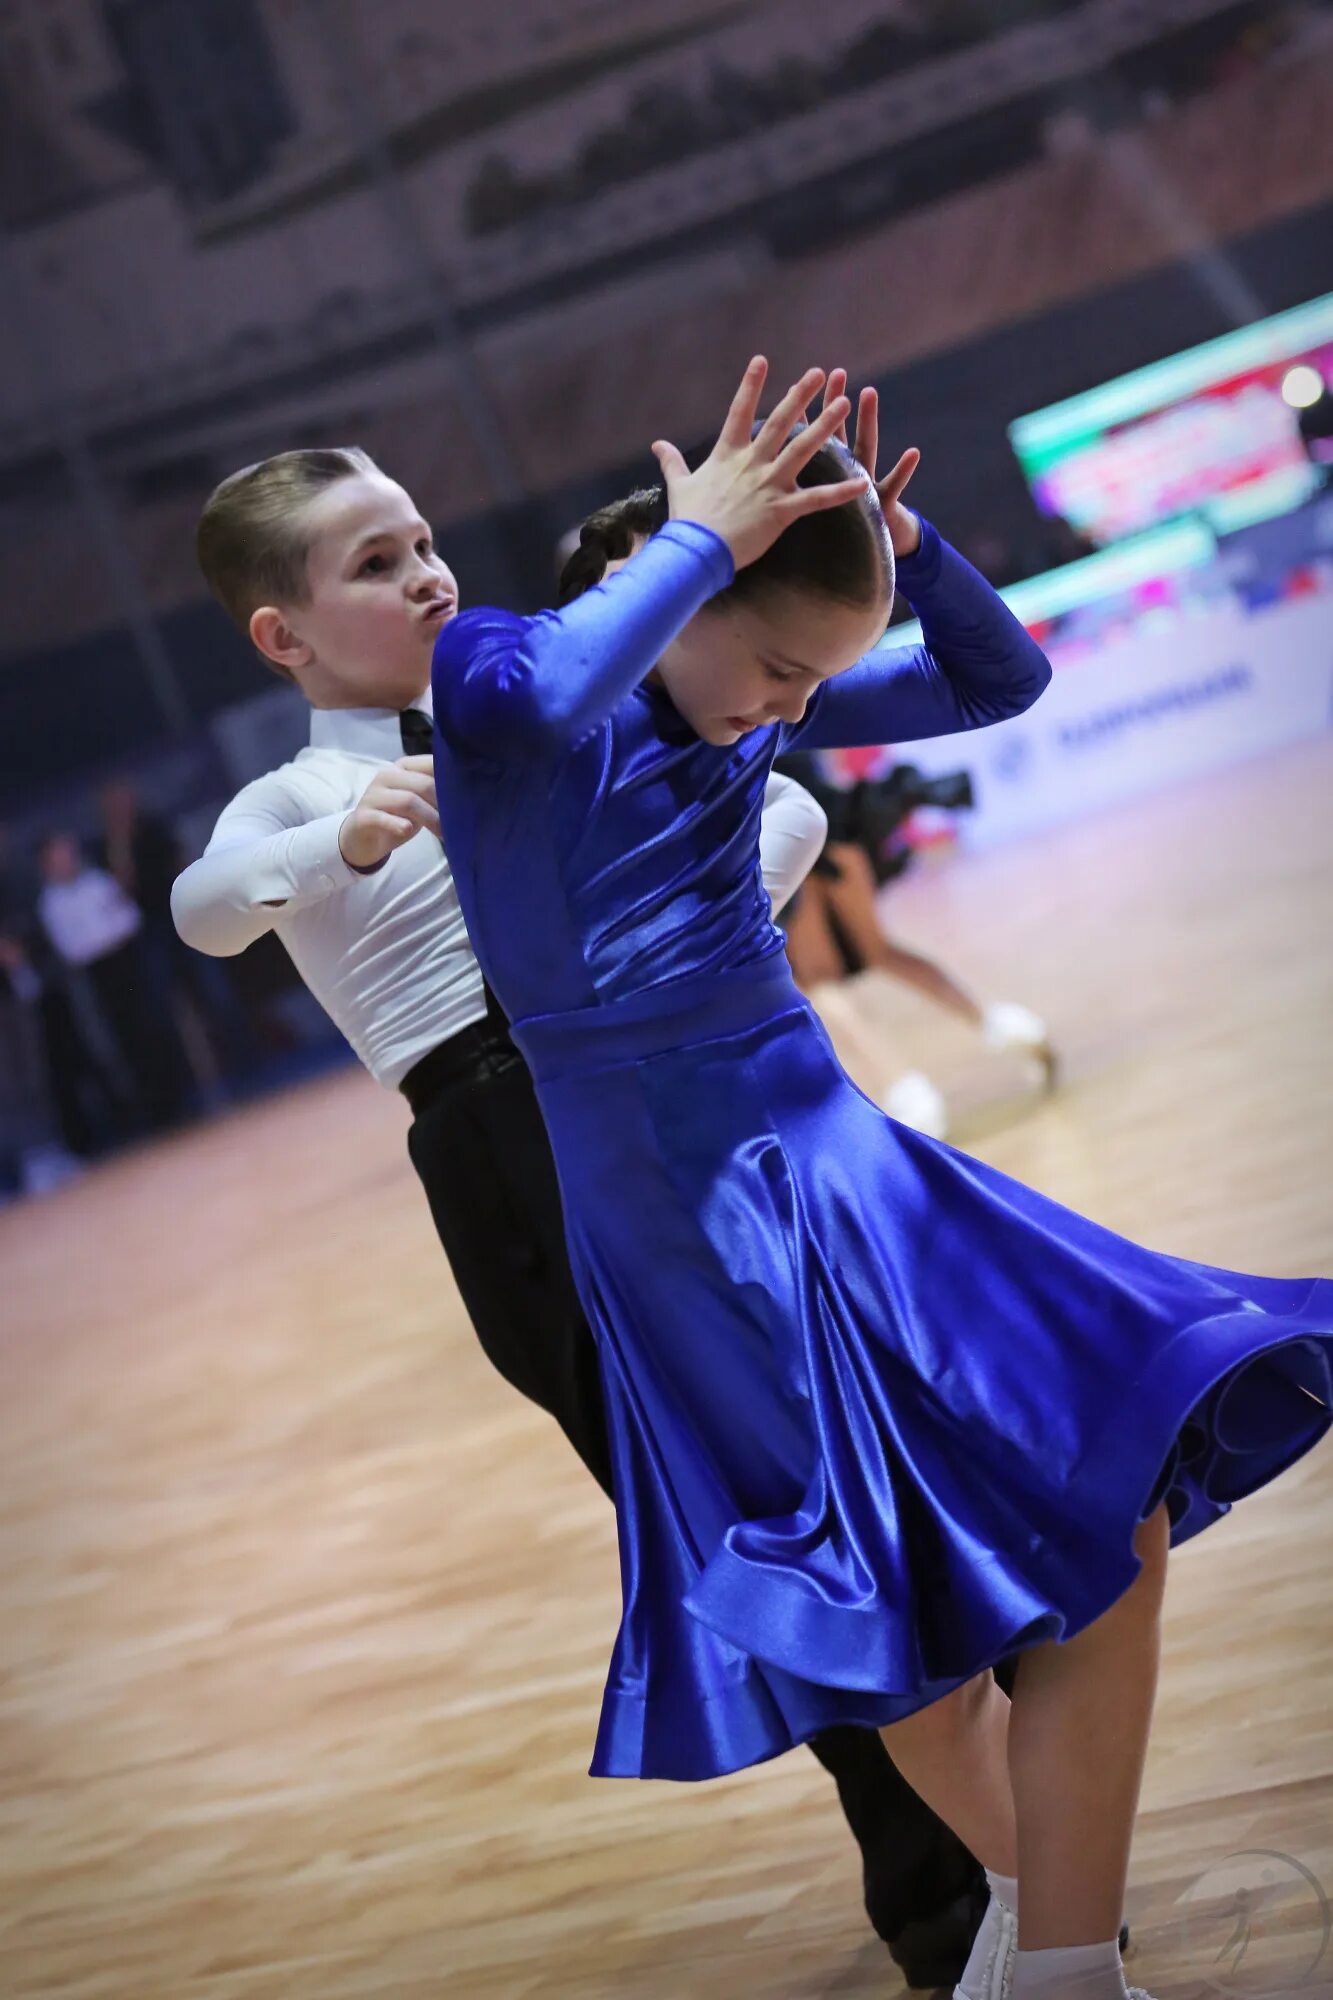 Первенство России дети 2 танцевальный спорт. Чемпионат и первенство россии по танцевальному спорту